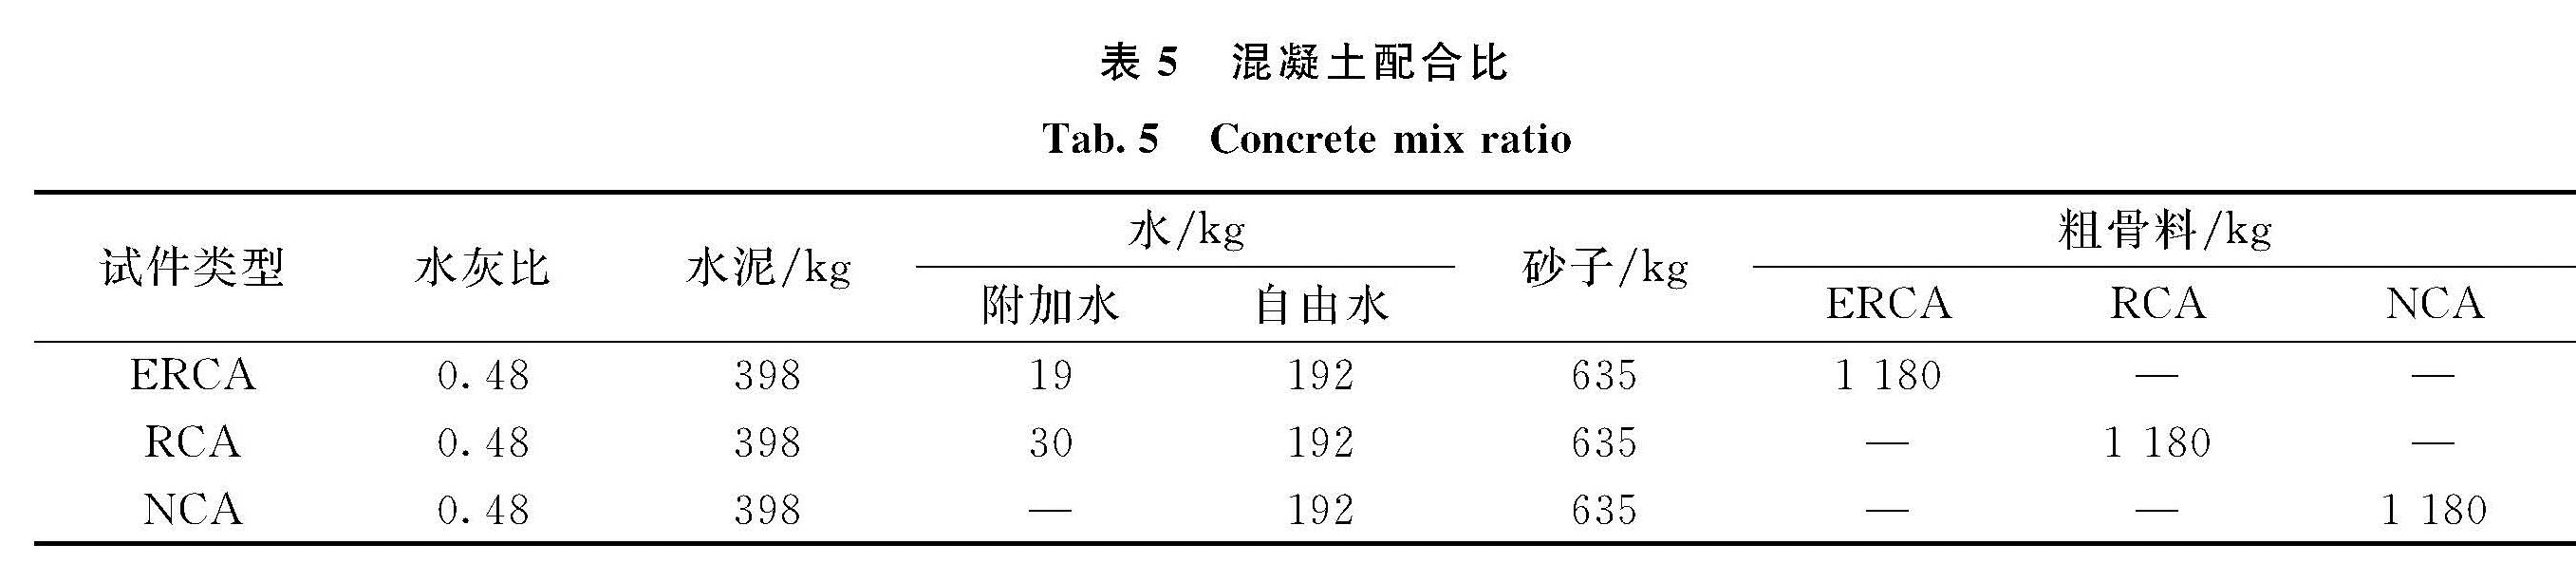 表5 混凝土配合比<br/>Tab.5 Concrete mix ratio